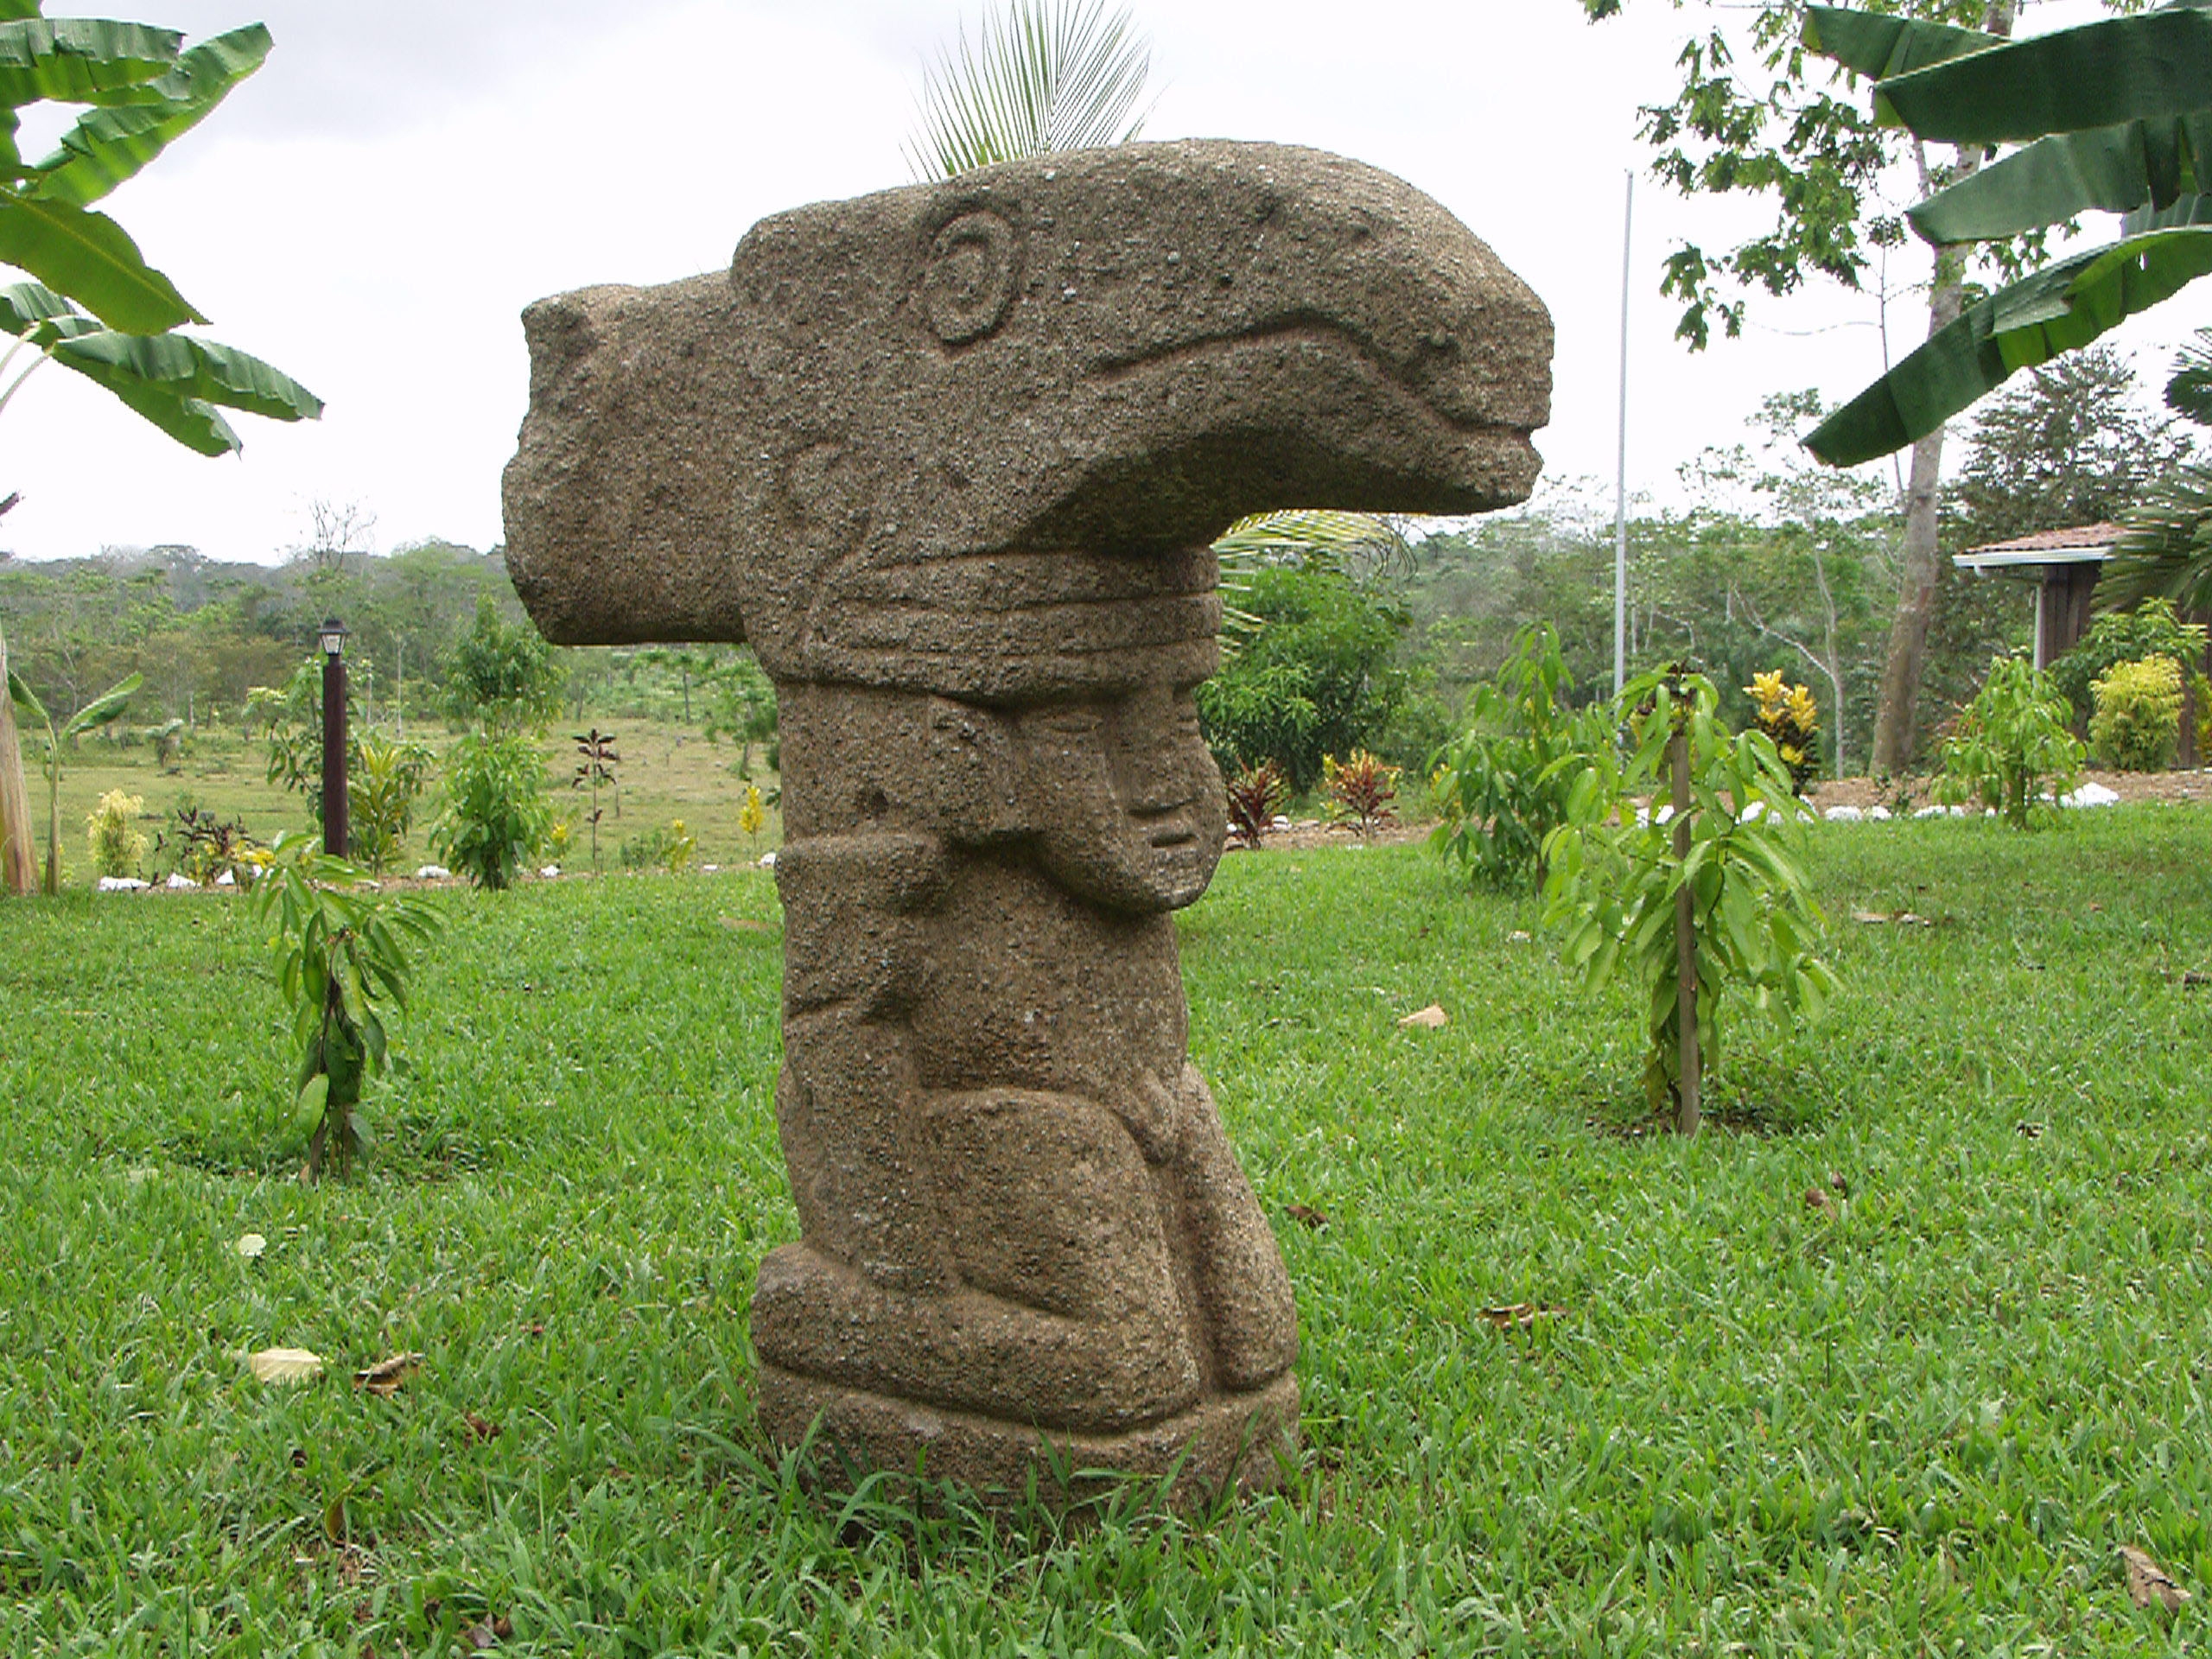 Pre-columbian statues on Ometepe Island in Lake Nicaragua